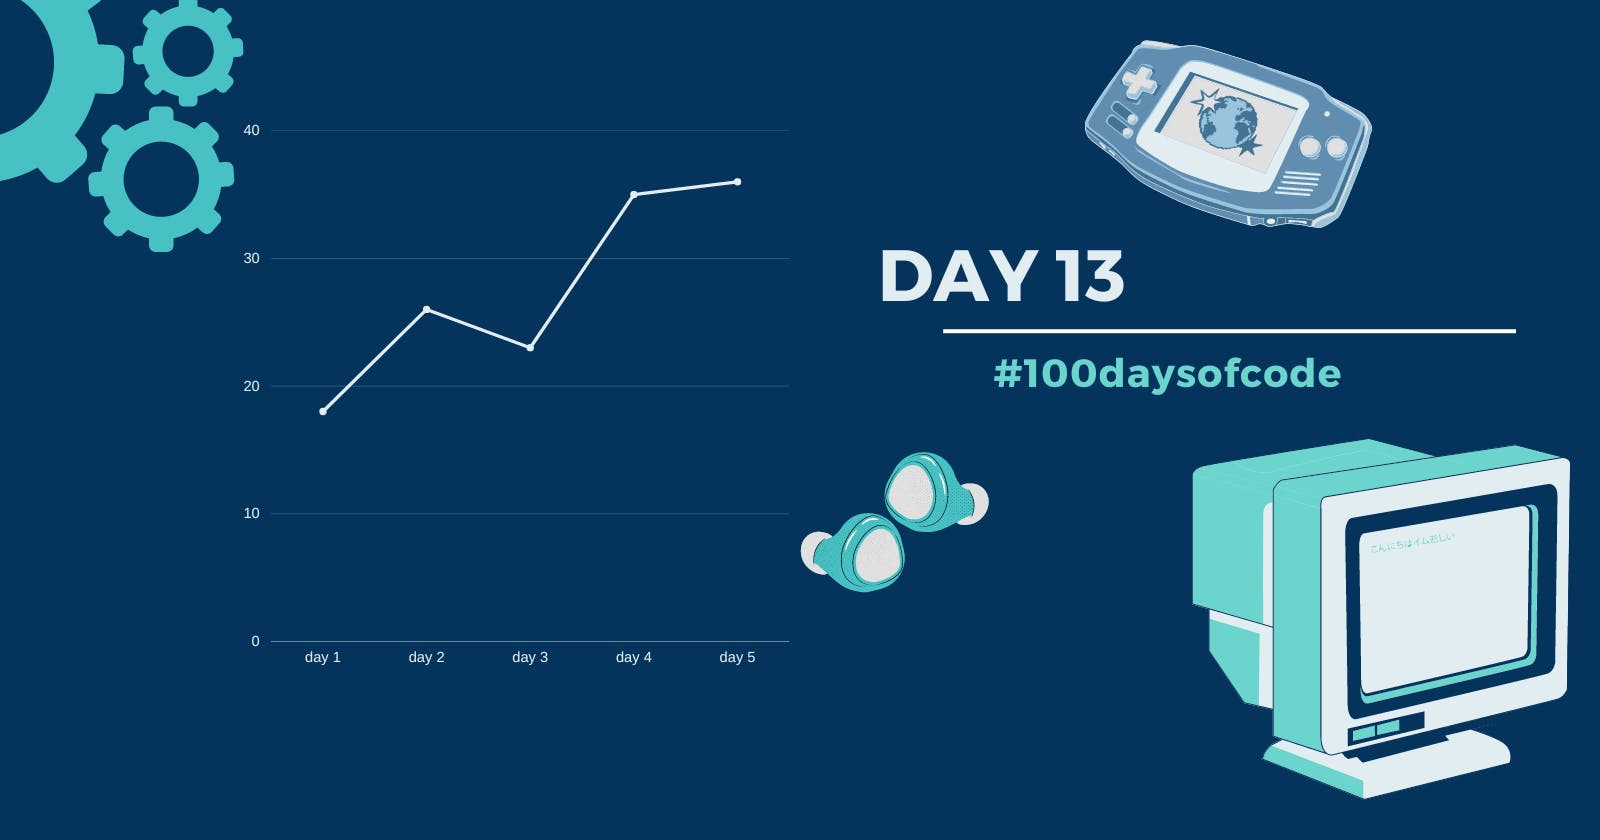 Day 13 in #100daysofcode challenge